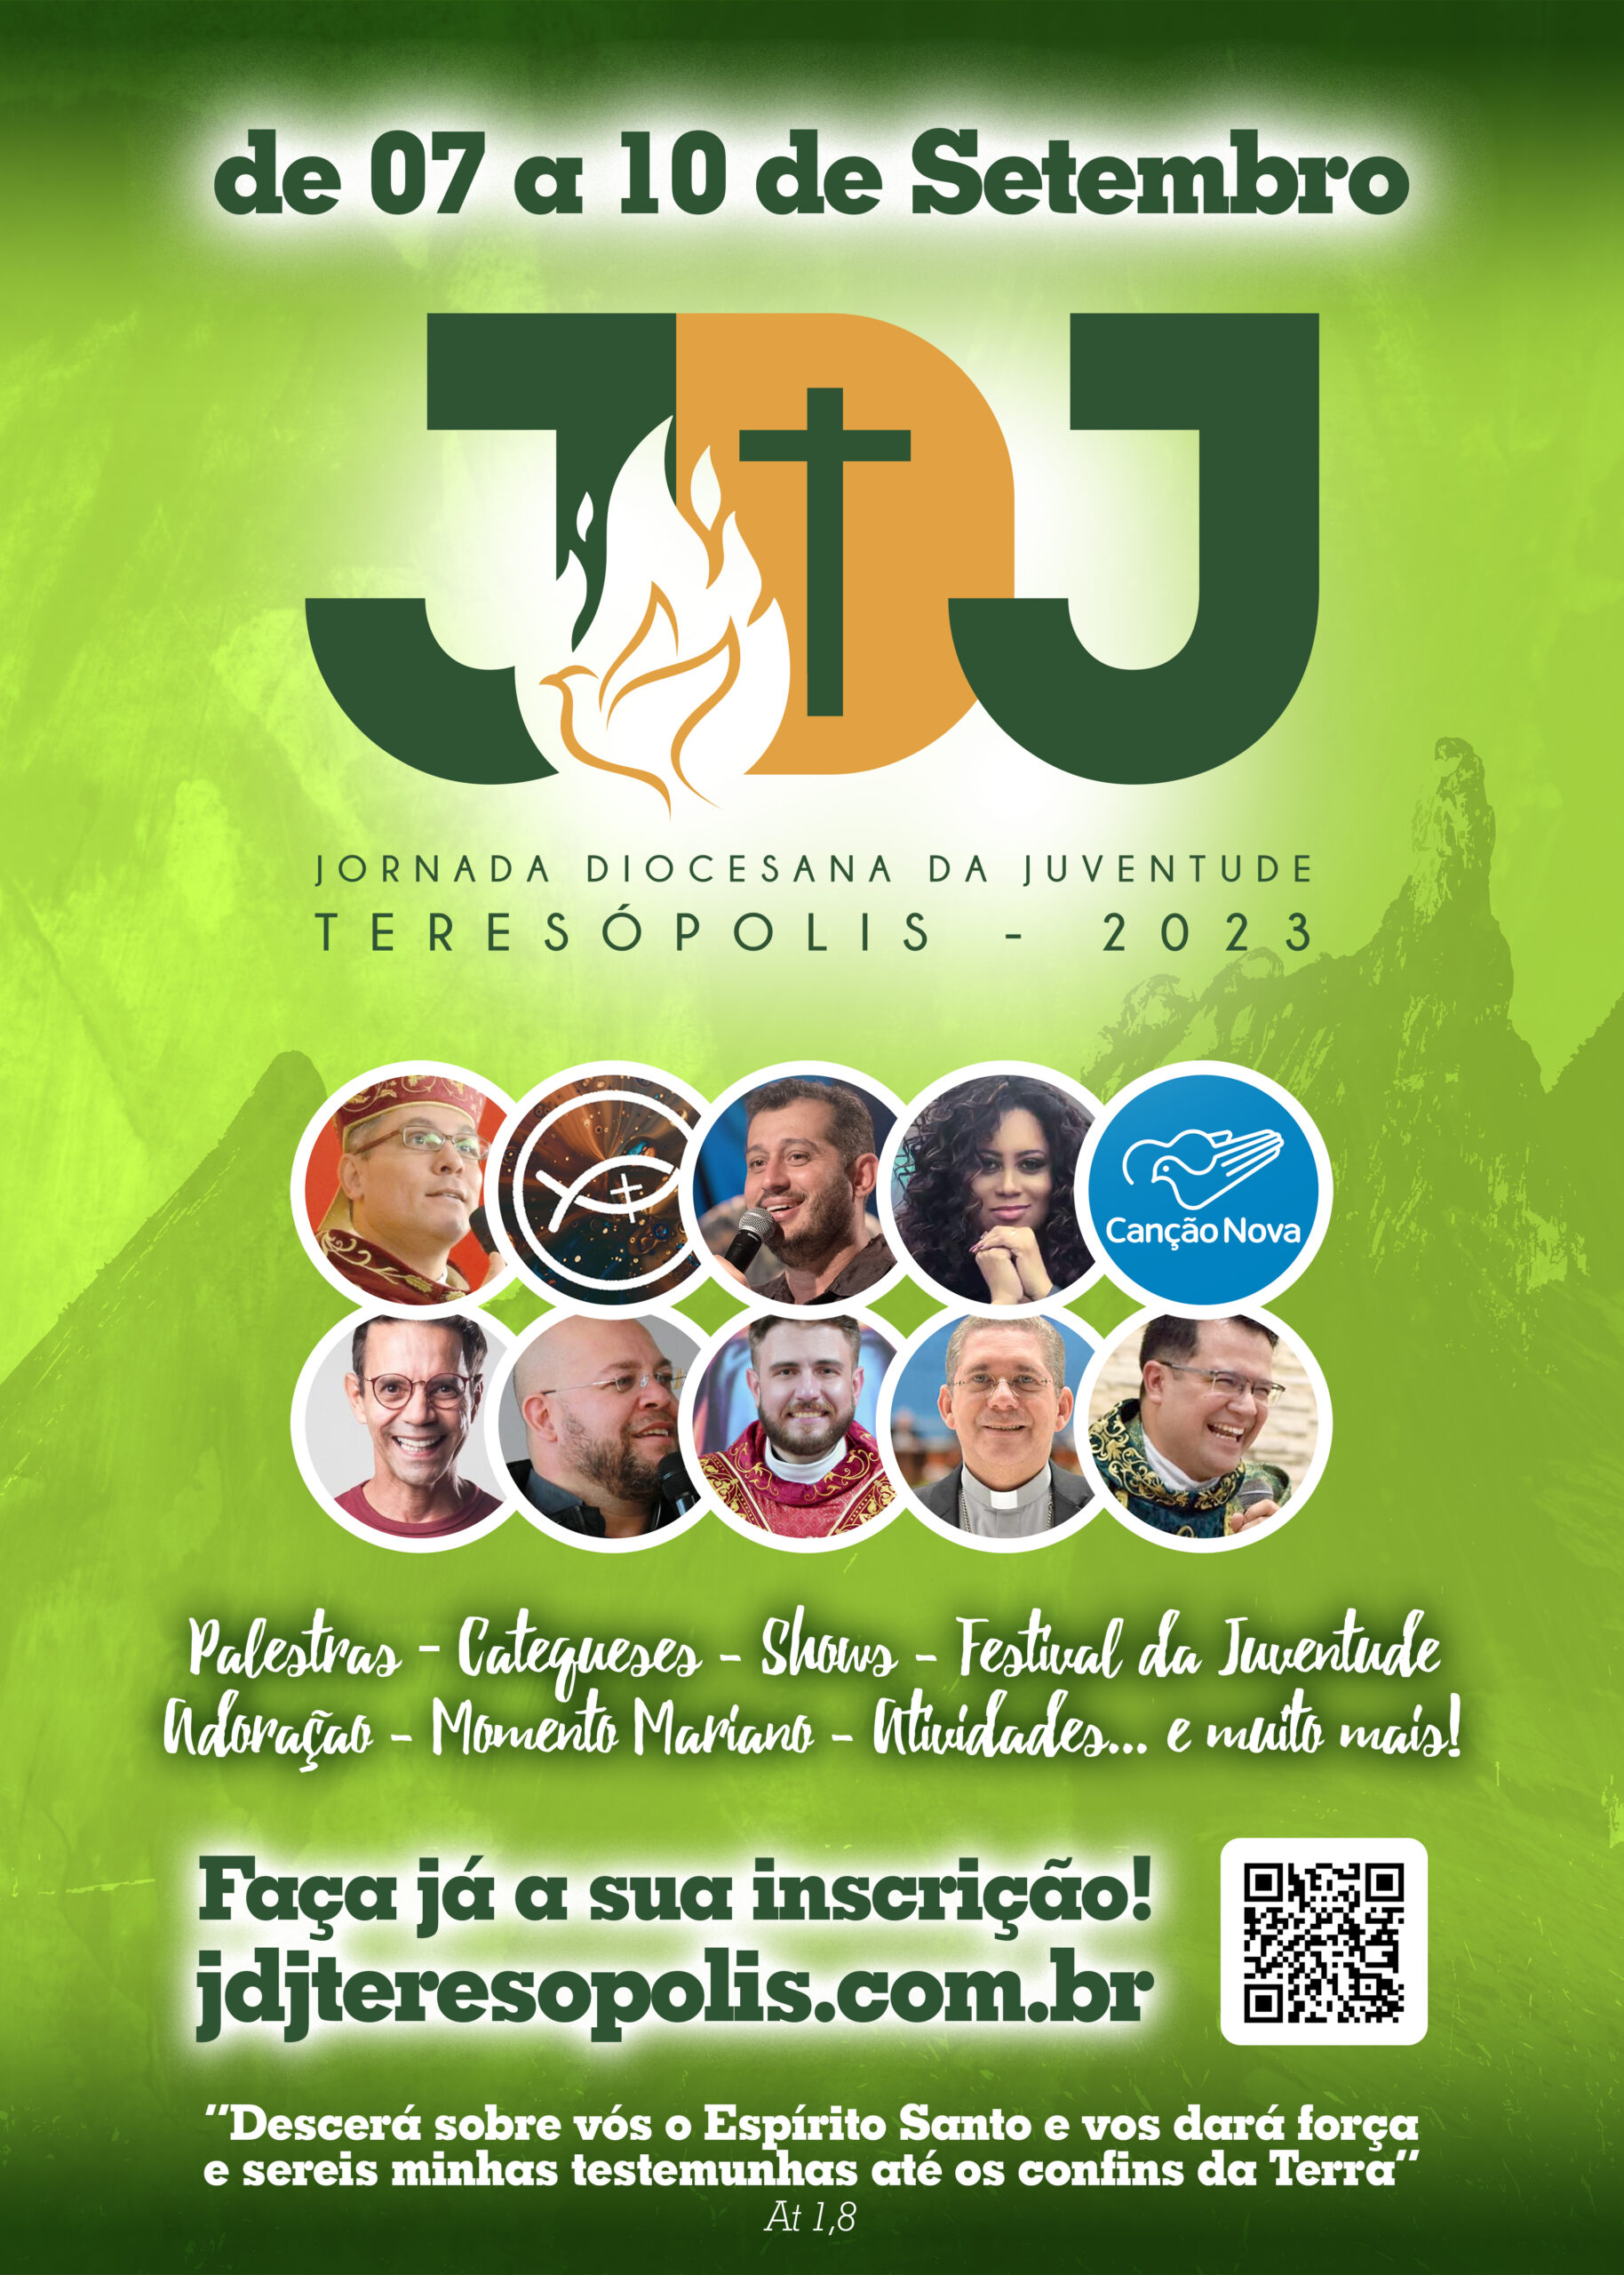 Jornada Diocesana da Juventude! - D.A Online